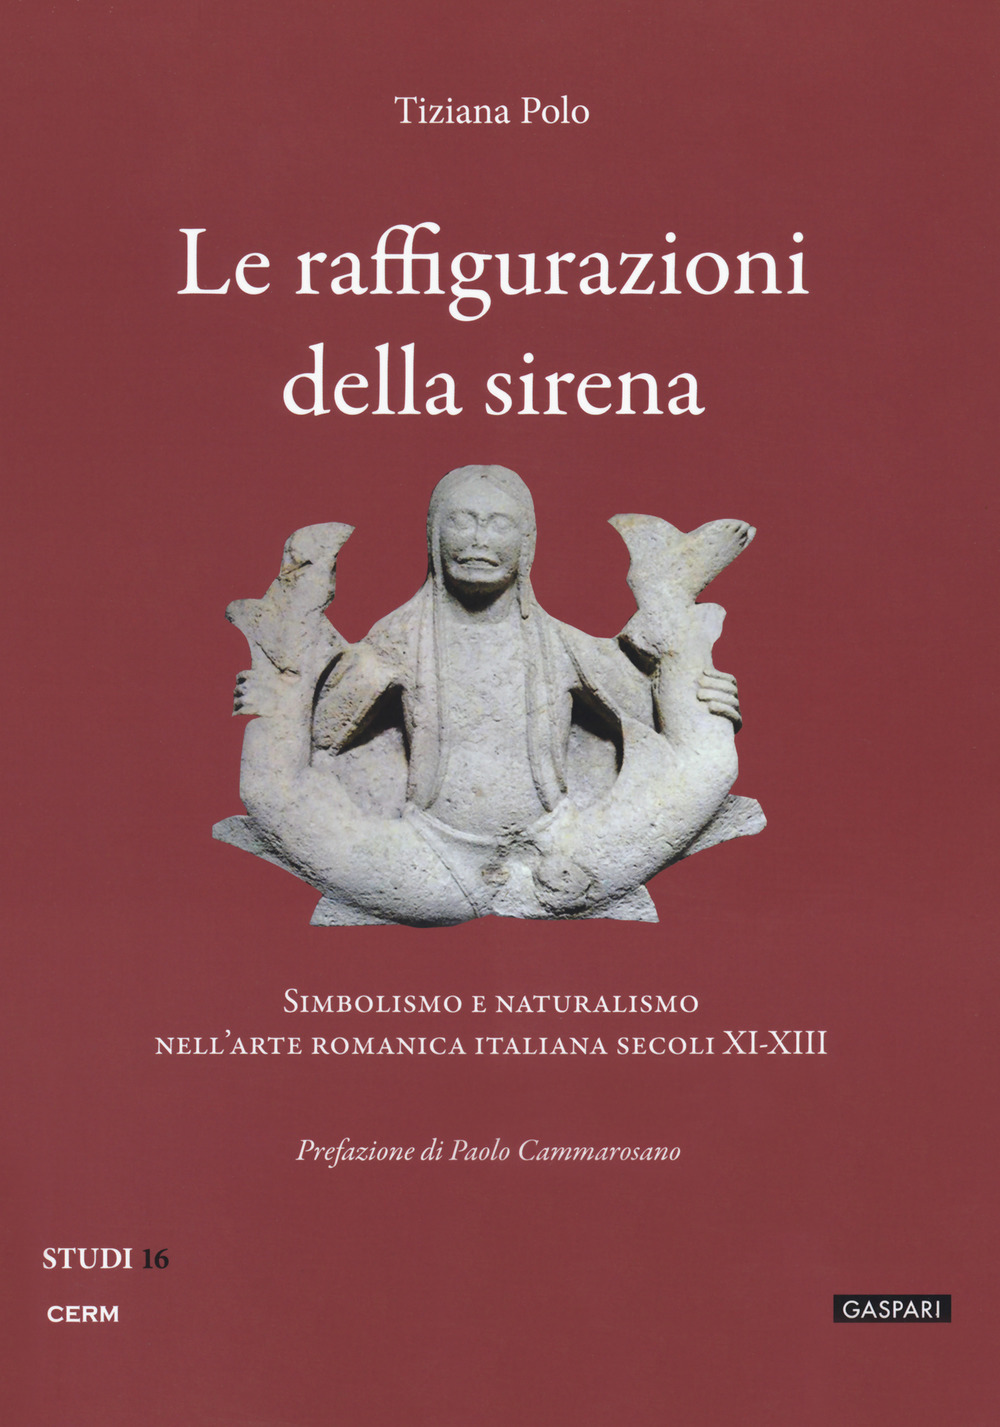 Image of Le raffigurazioni della sirena. Simbolismo e naturalismo nell'arte romanica italiana, secoli XI-XIII